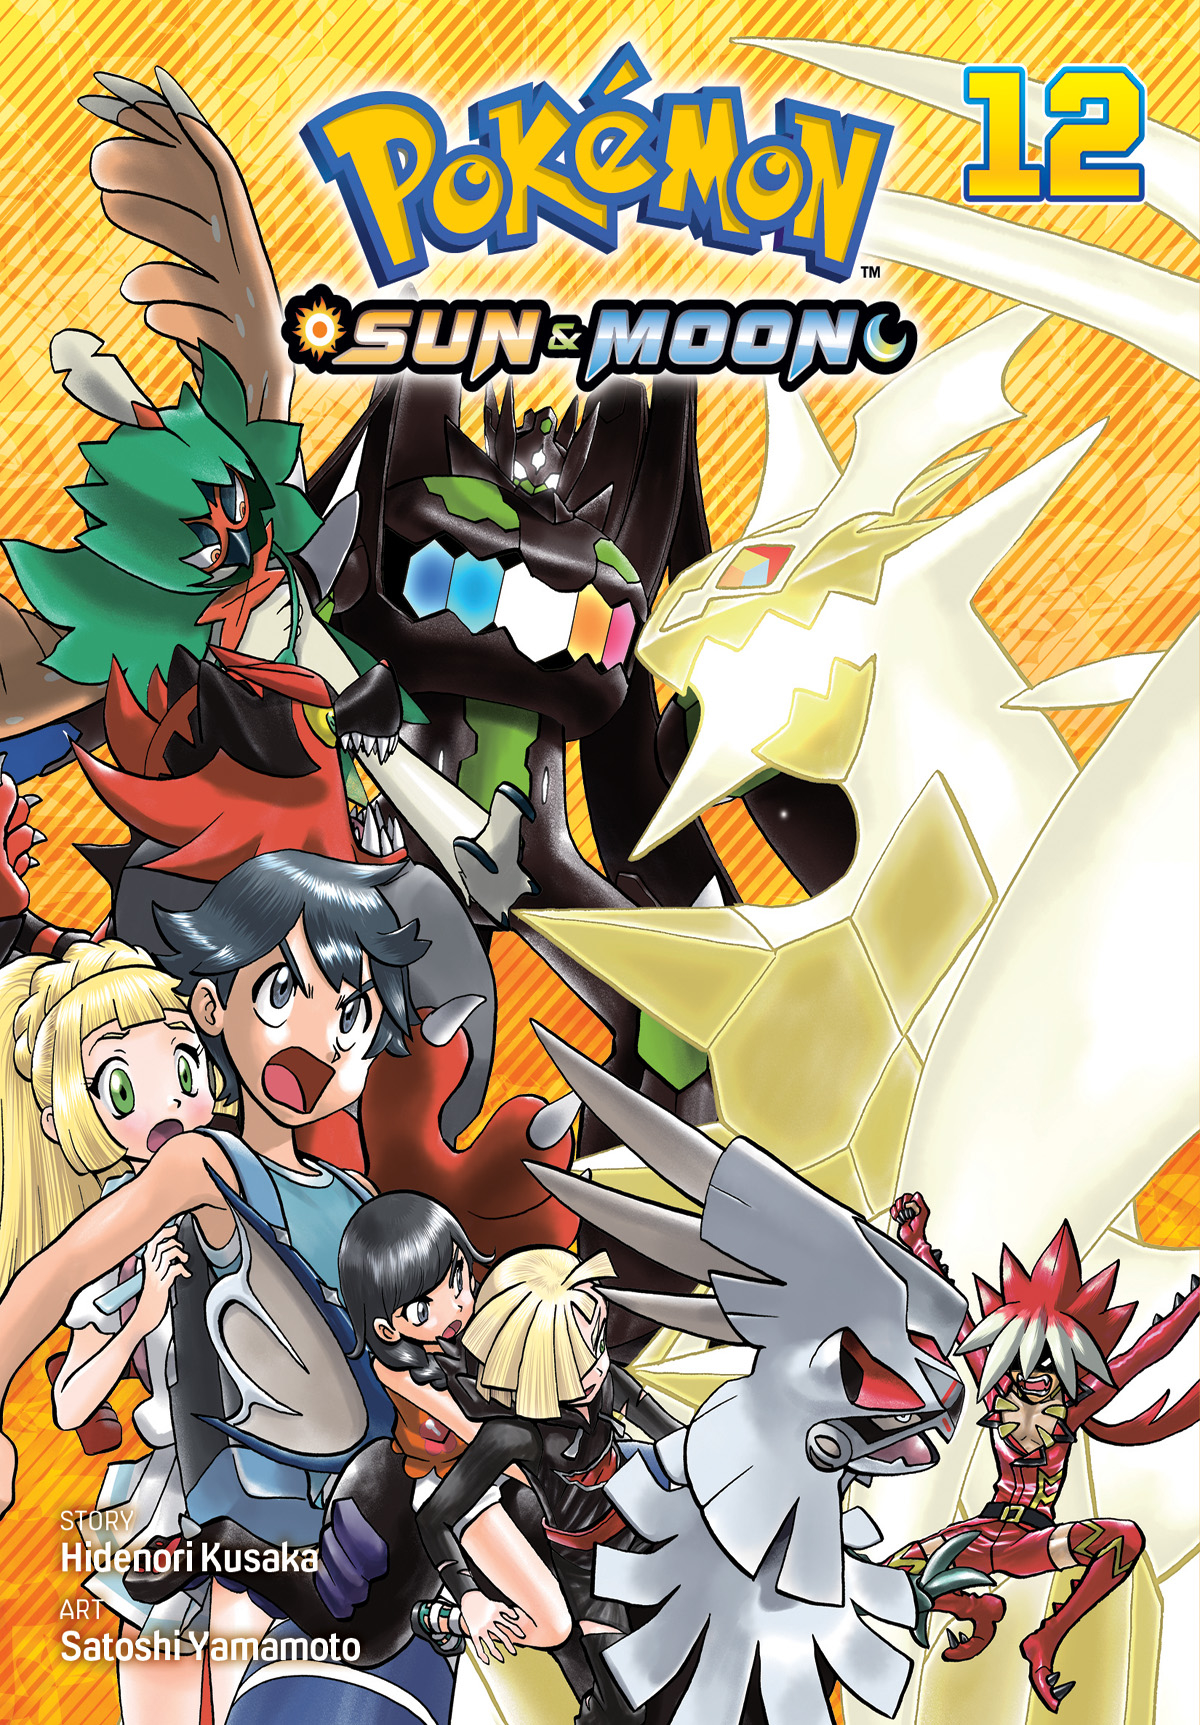 Pokémon Sun & Moon Manga Volume 12